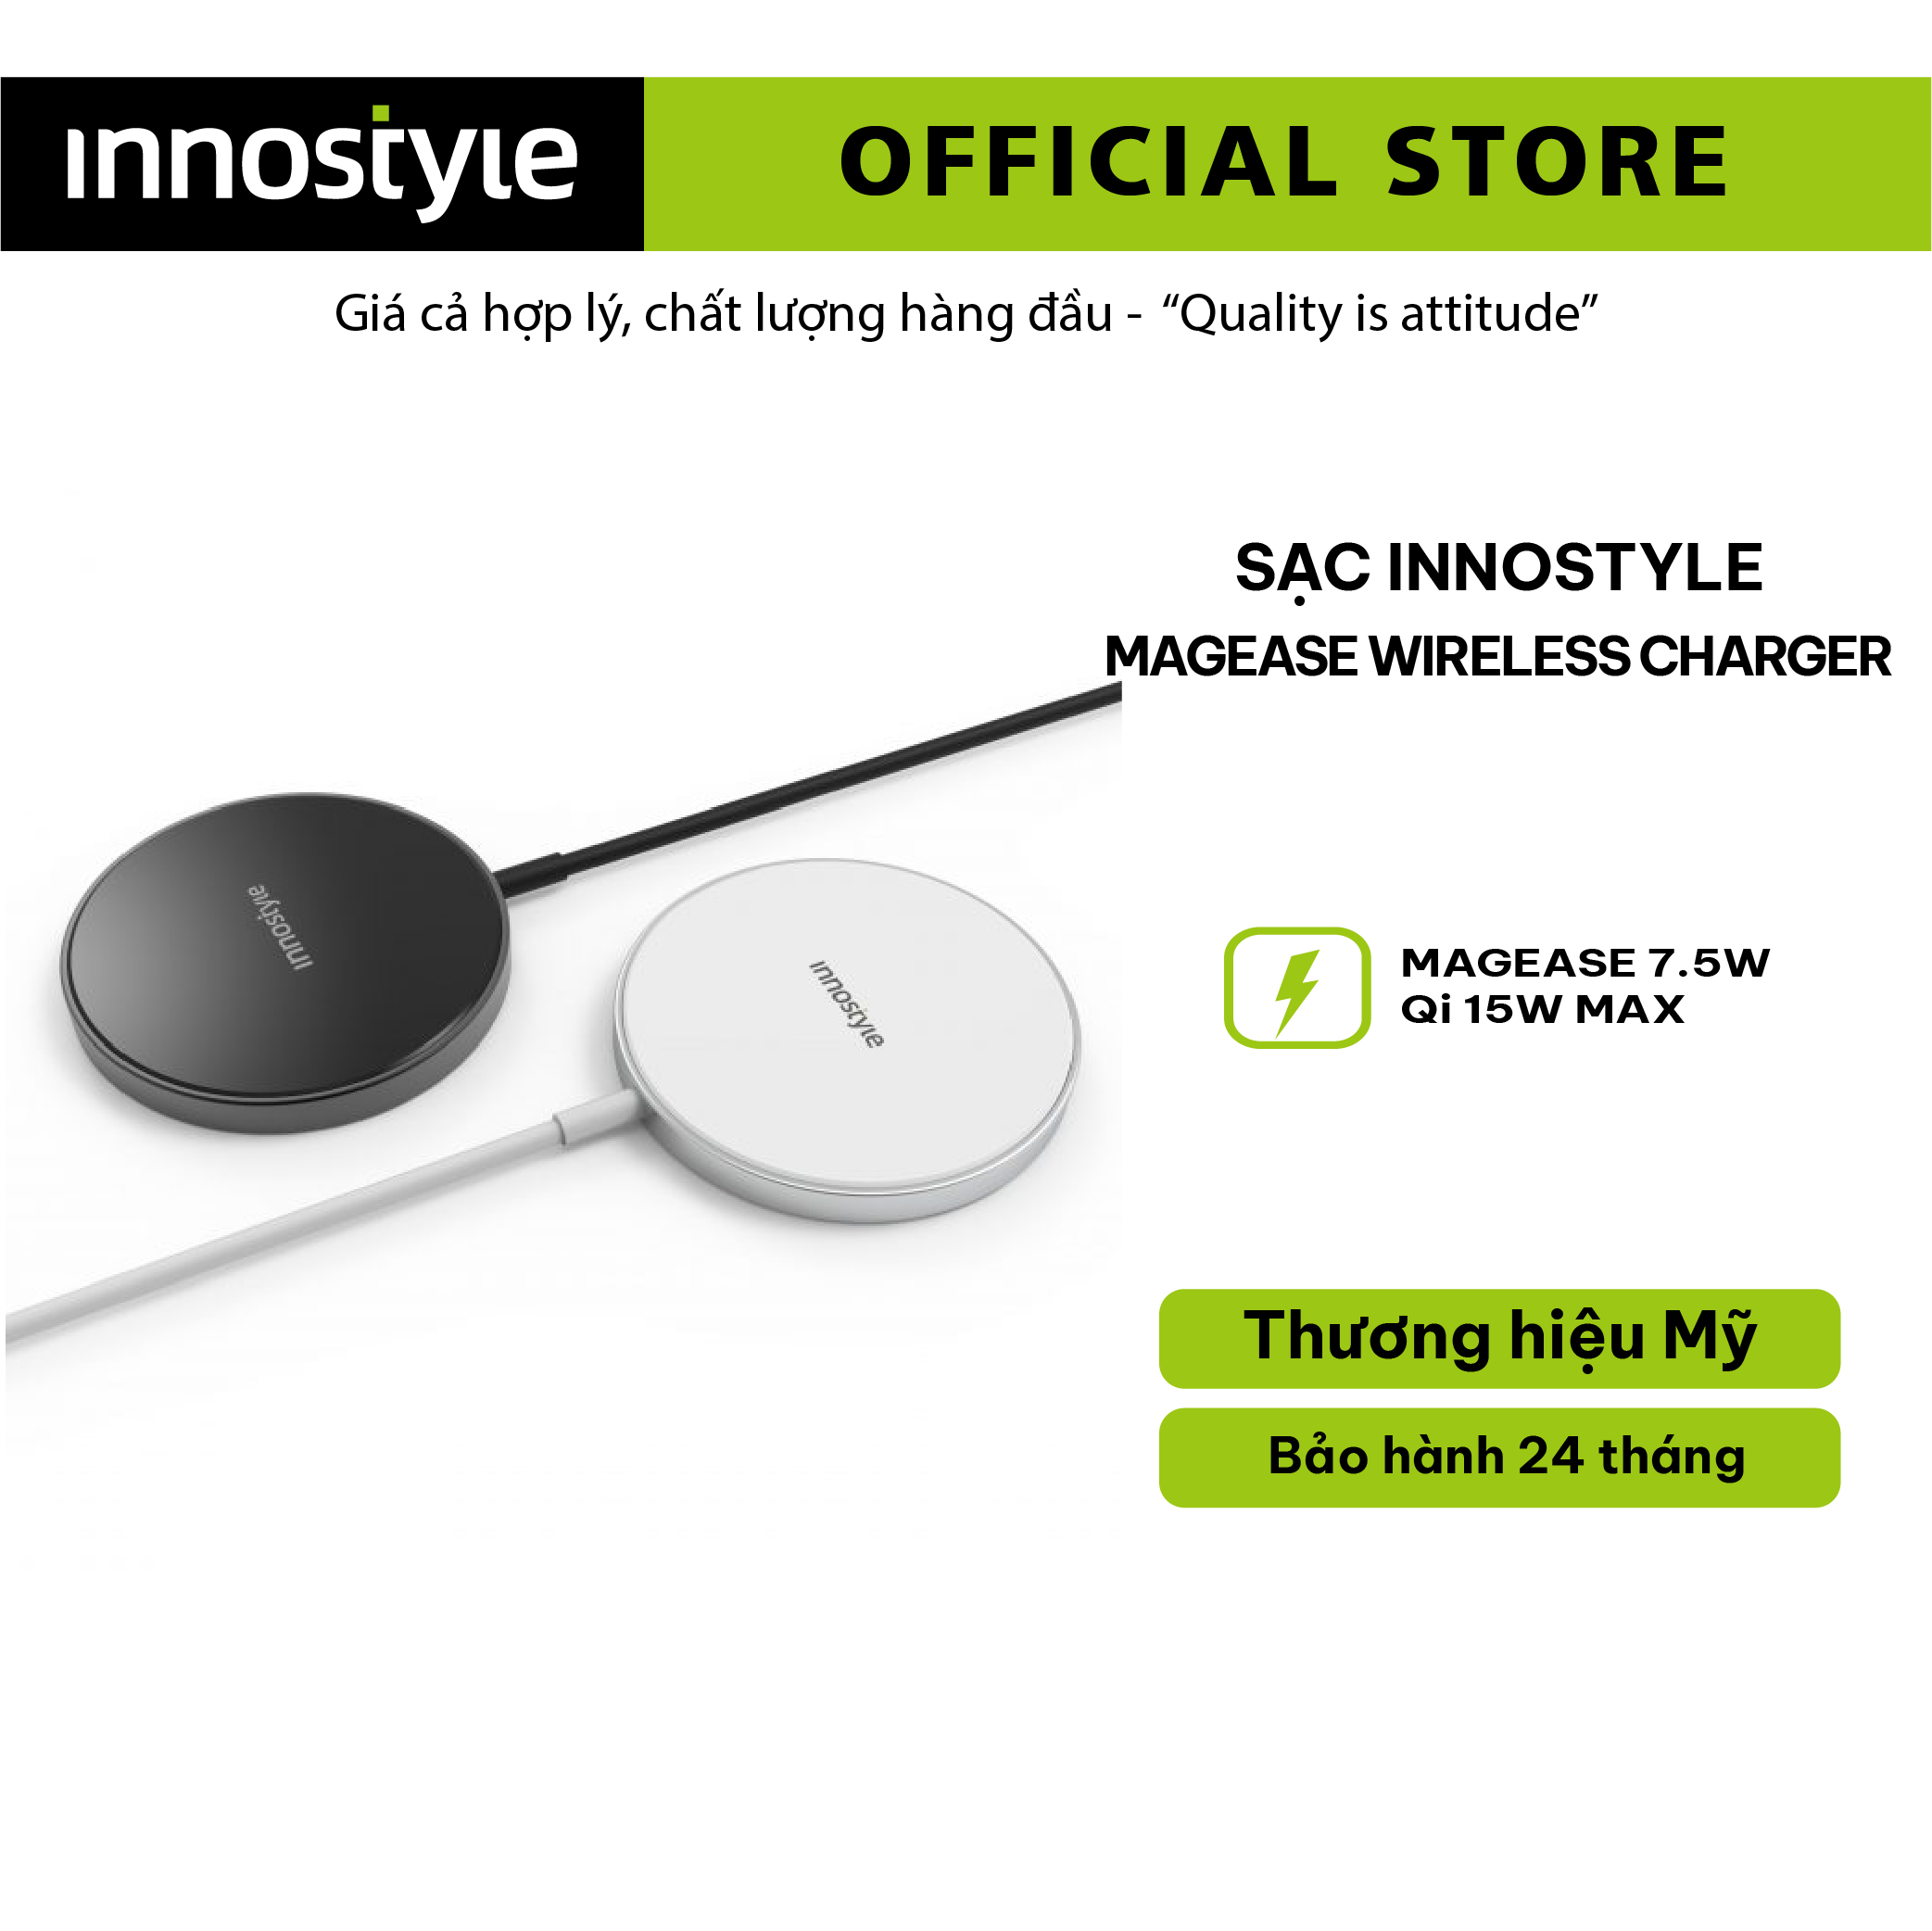 Bộ sạc không dây Innostyle Magease Wireless Charger - Thiết kế tiện lợi, nhỏ gọn, hàng chính hãng